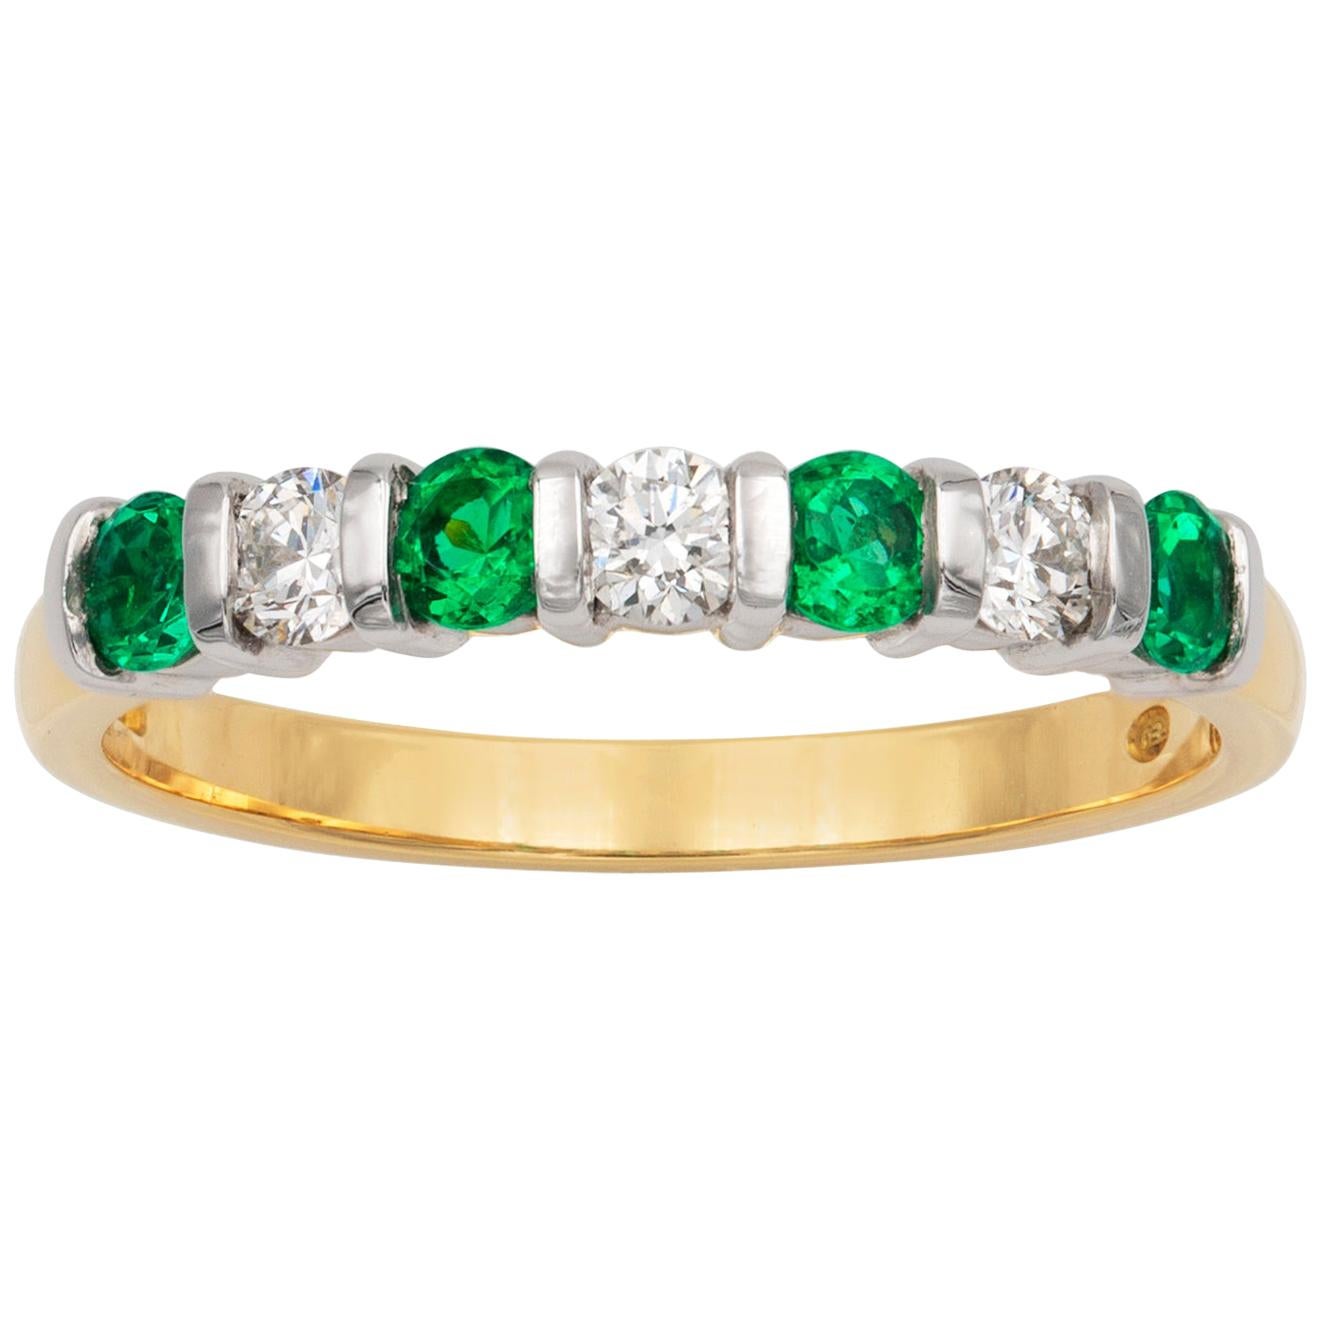 Seven-Stone Diamond and Emerald Ring